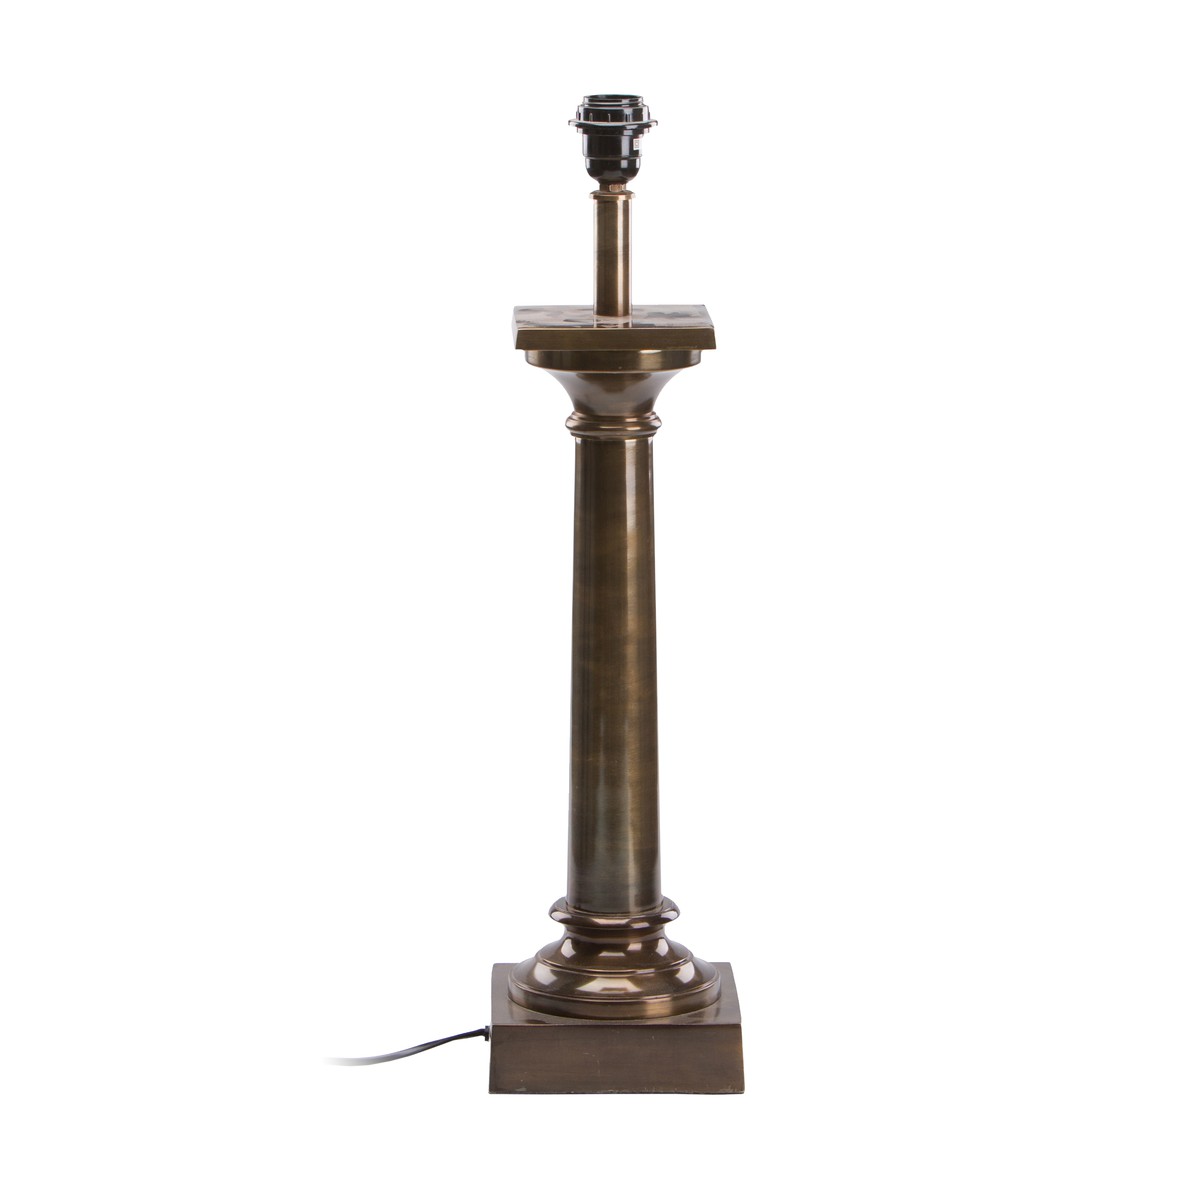   Pied de lampe Colonne Brun bronze 16x16x56.5cm